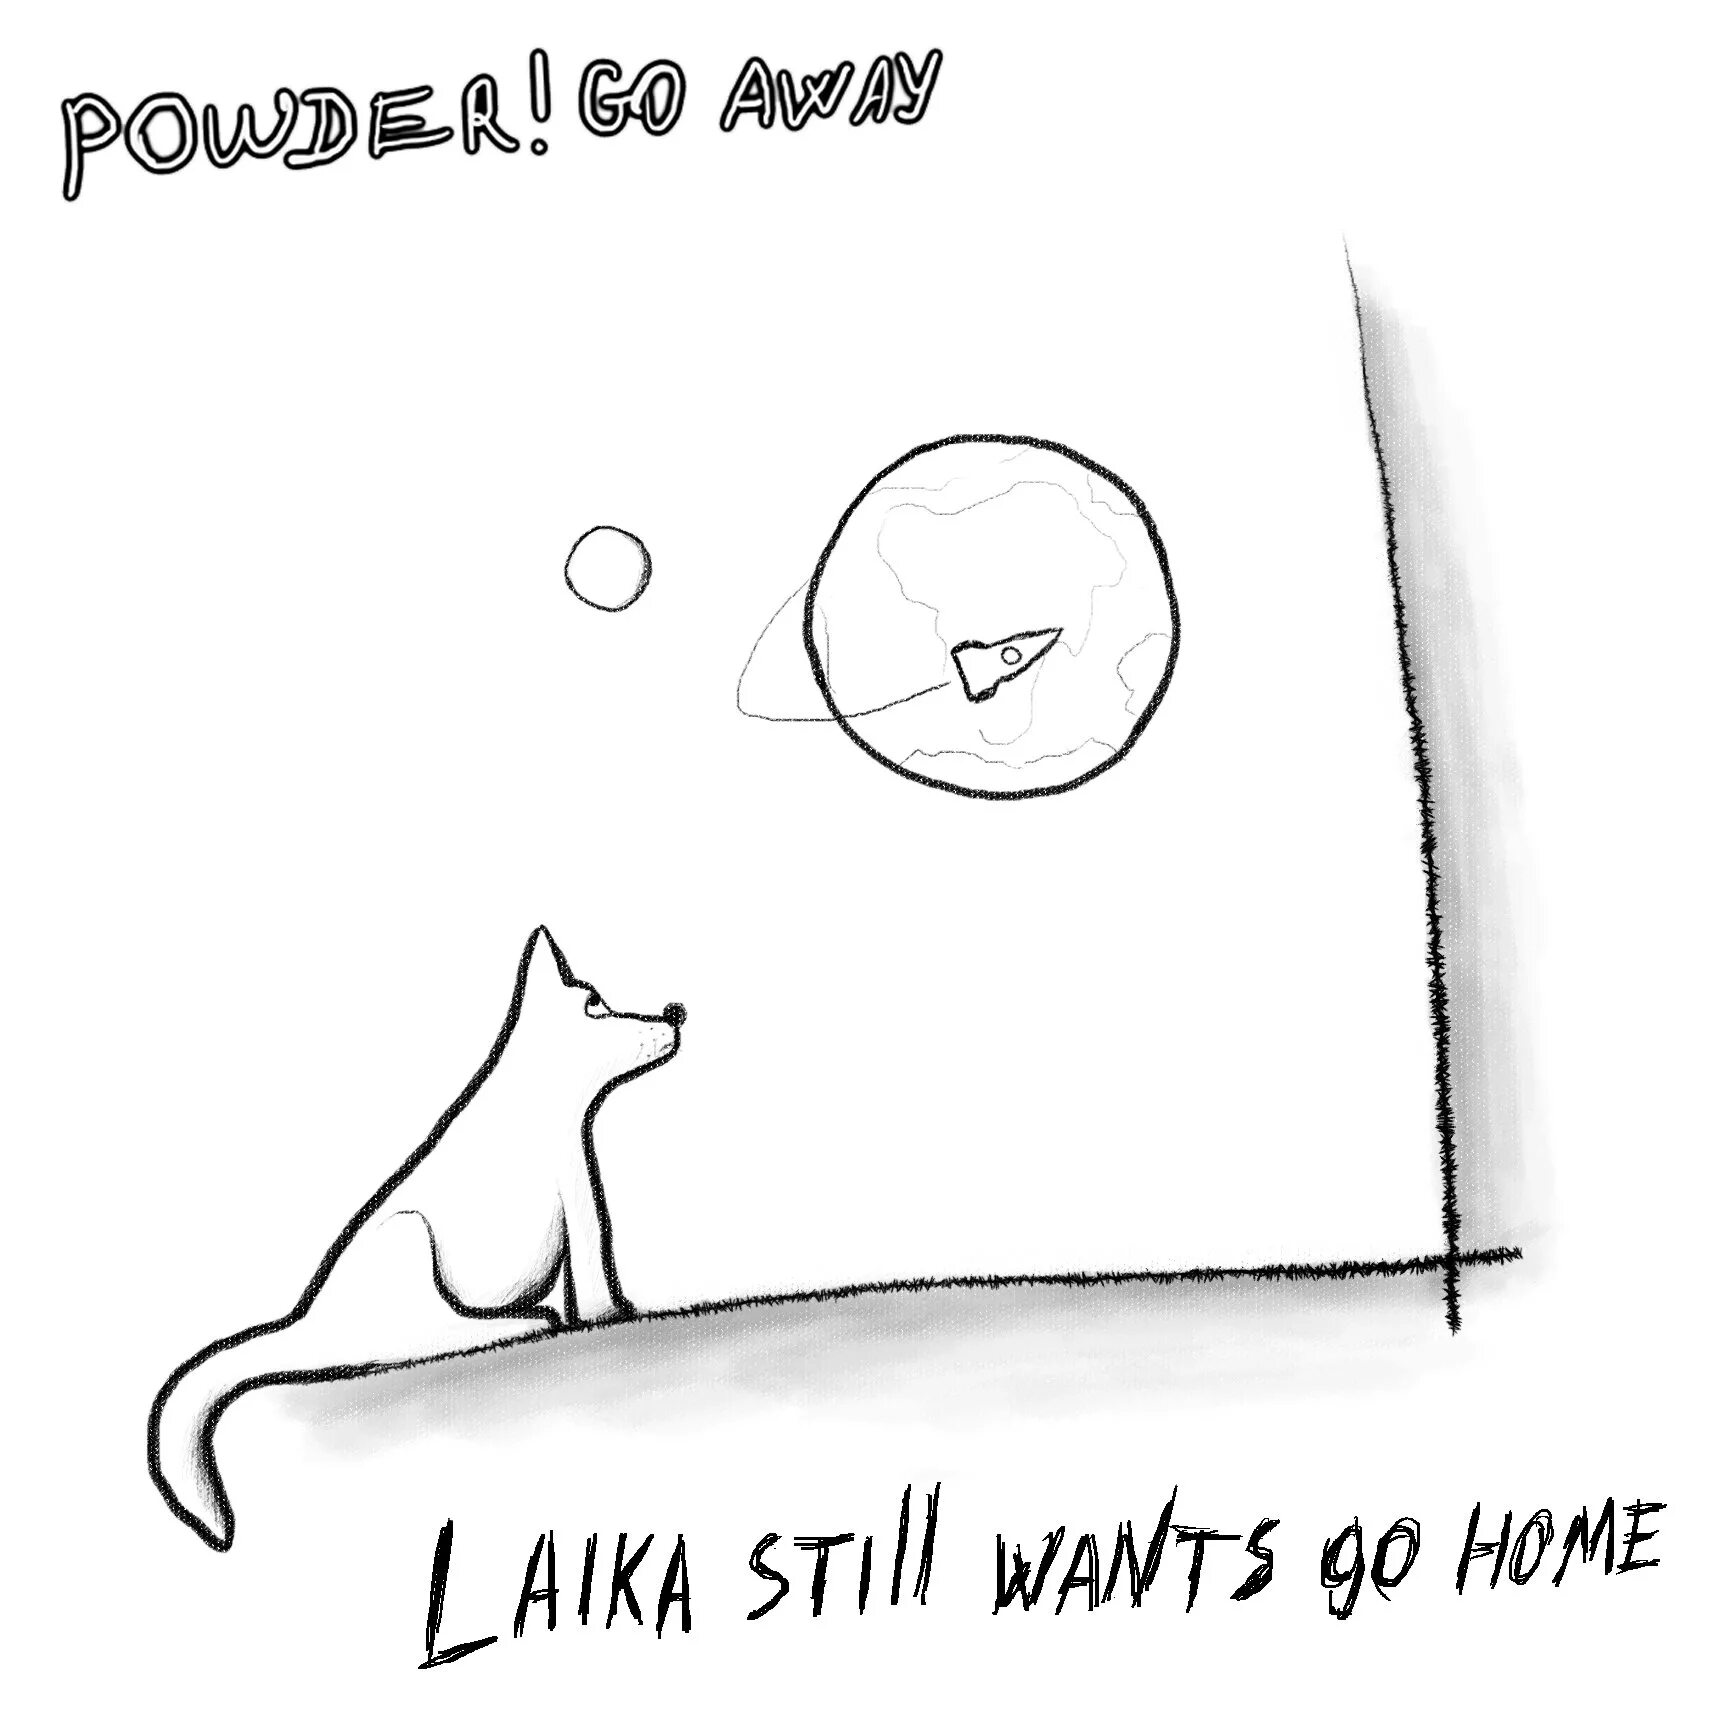 He wants go home. Powder go away laika. Laika still wants go Home. Go away. Go away кот.